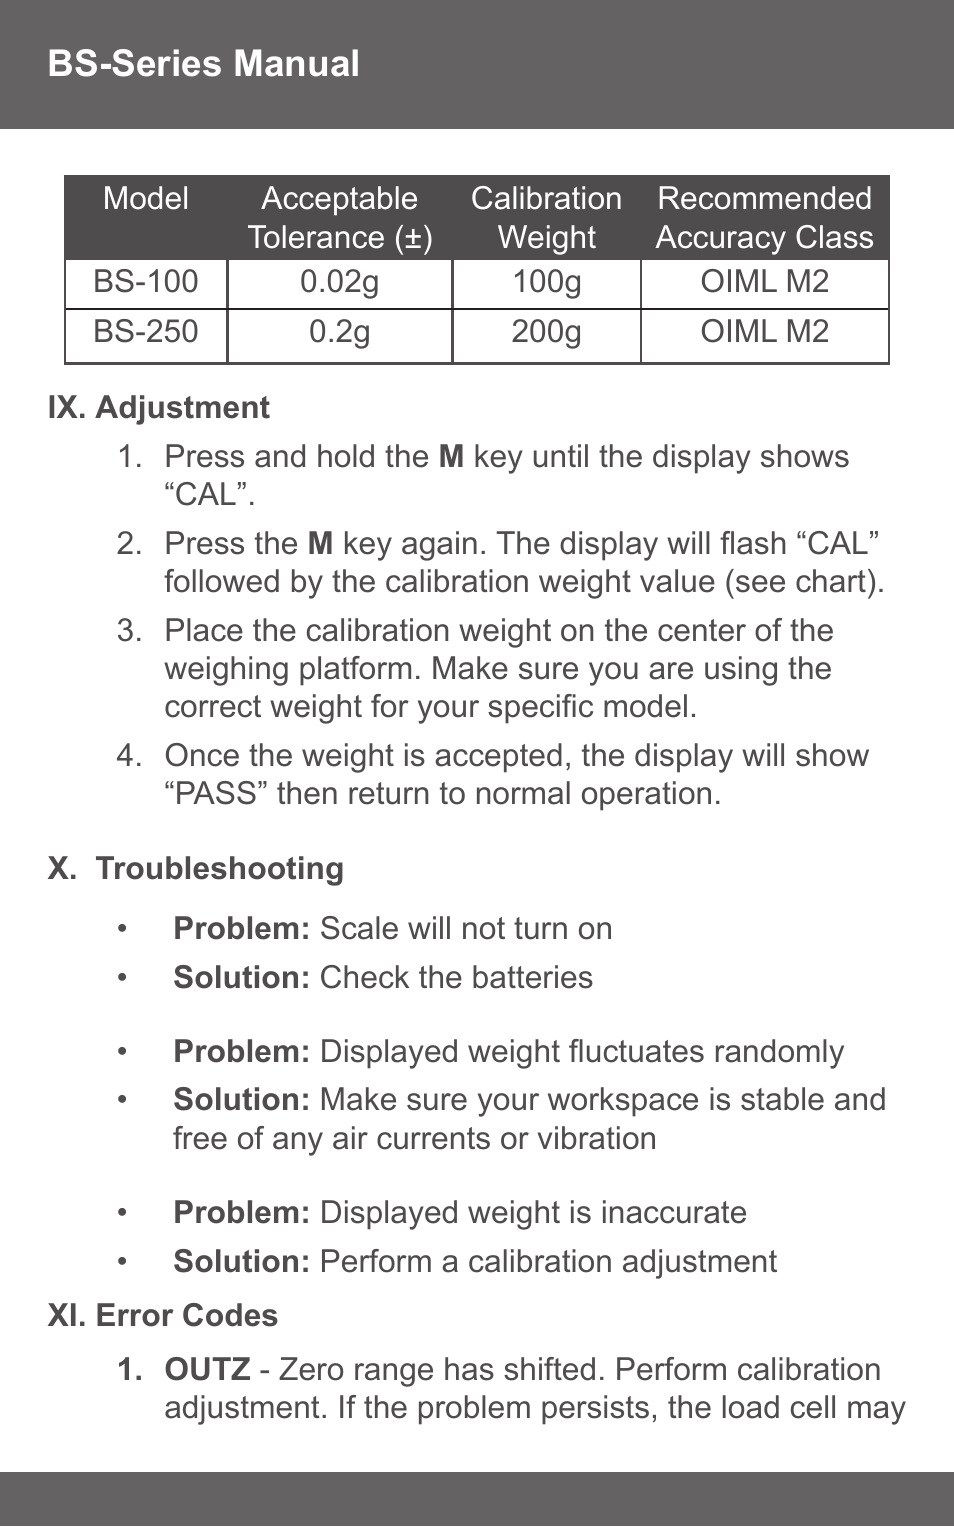 Calibration Weight Class Chart